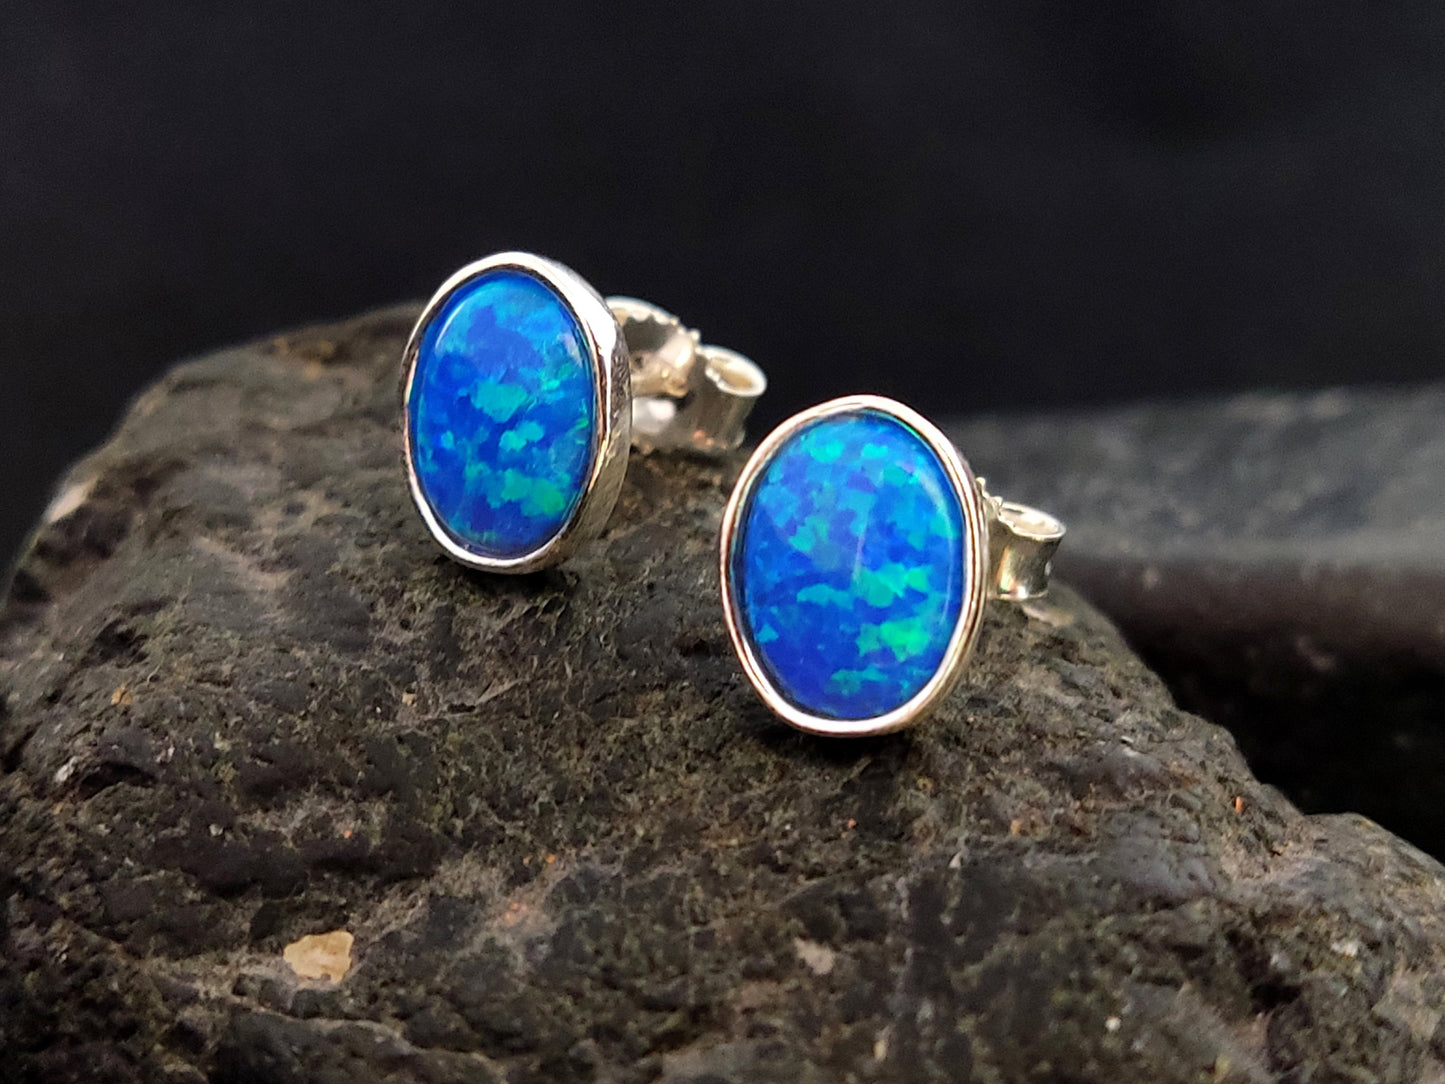 Sterling Silver 925 Greek Oval Fire Blue Opal Stud Earrings 10x8mm, Greek Opal Jewelry, From Greece, Griechischer Opal Silber Ohrringe